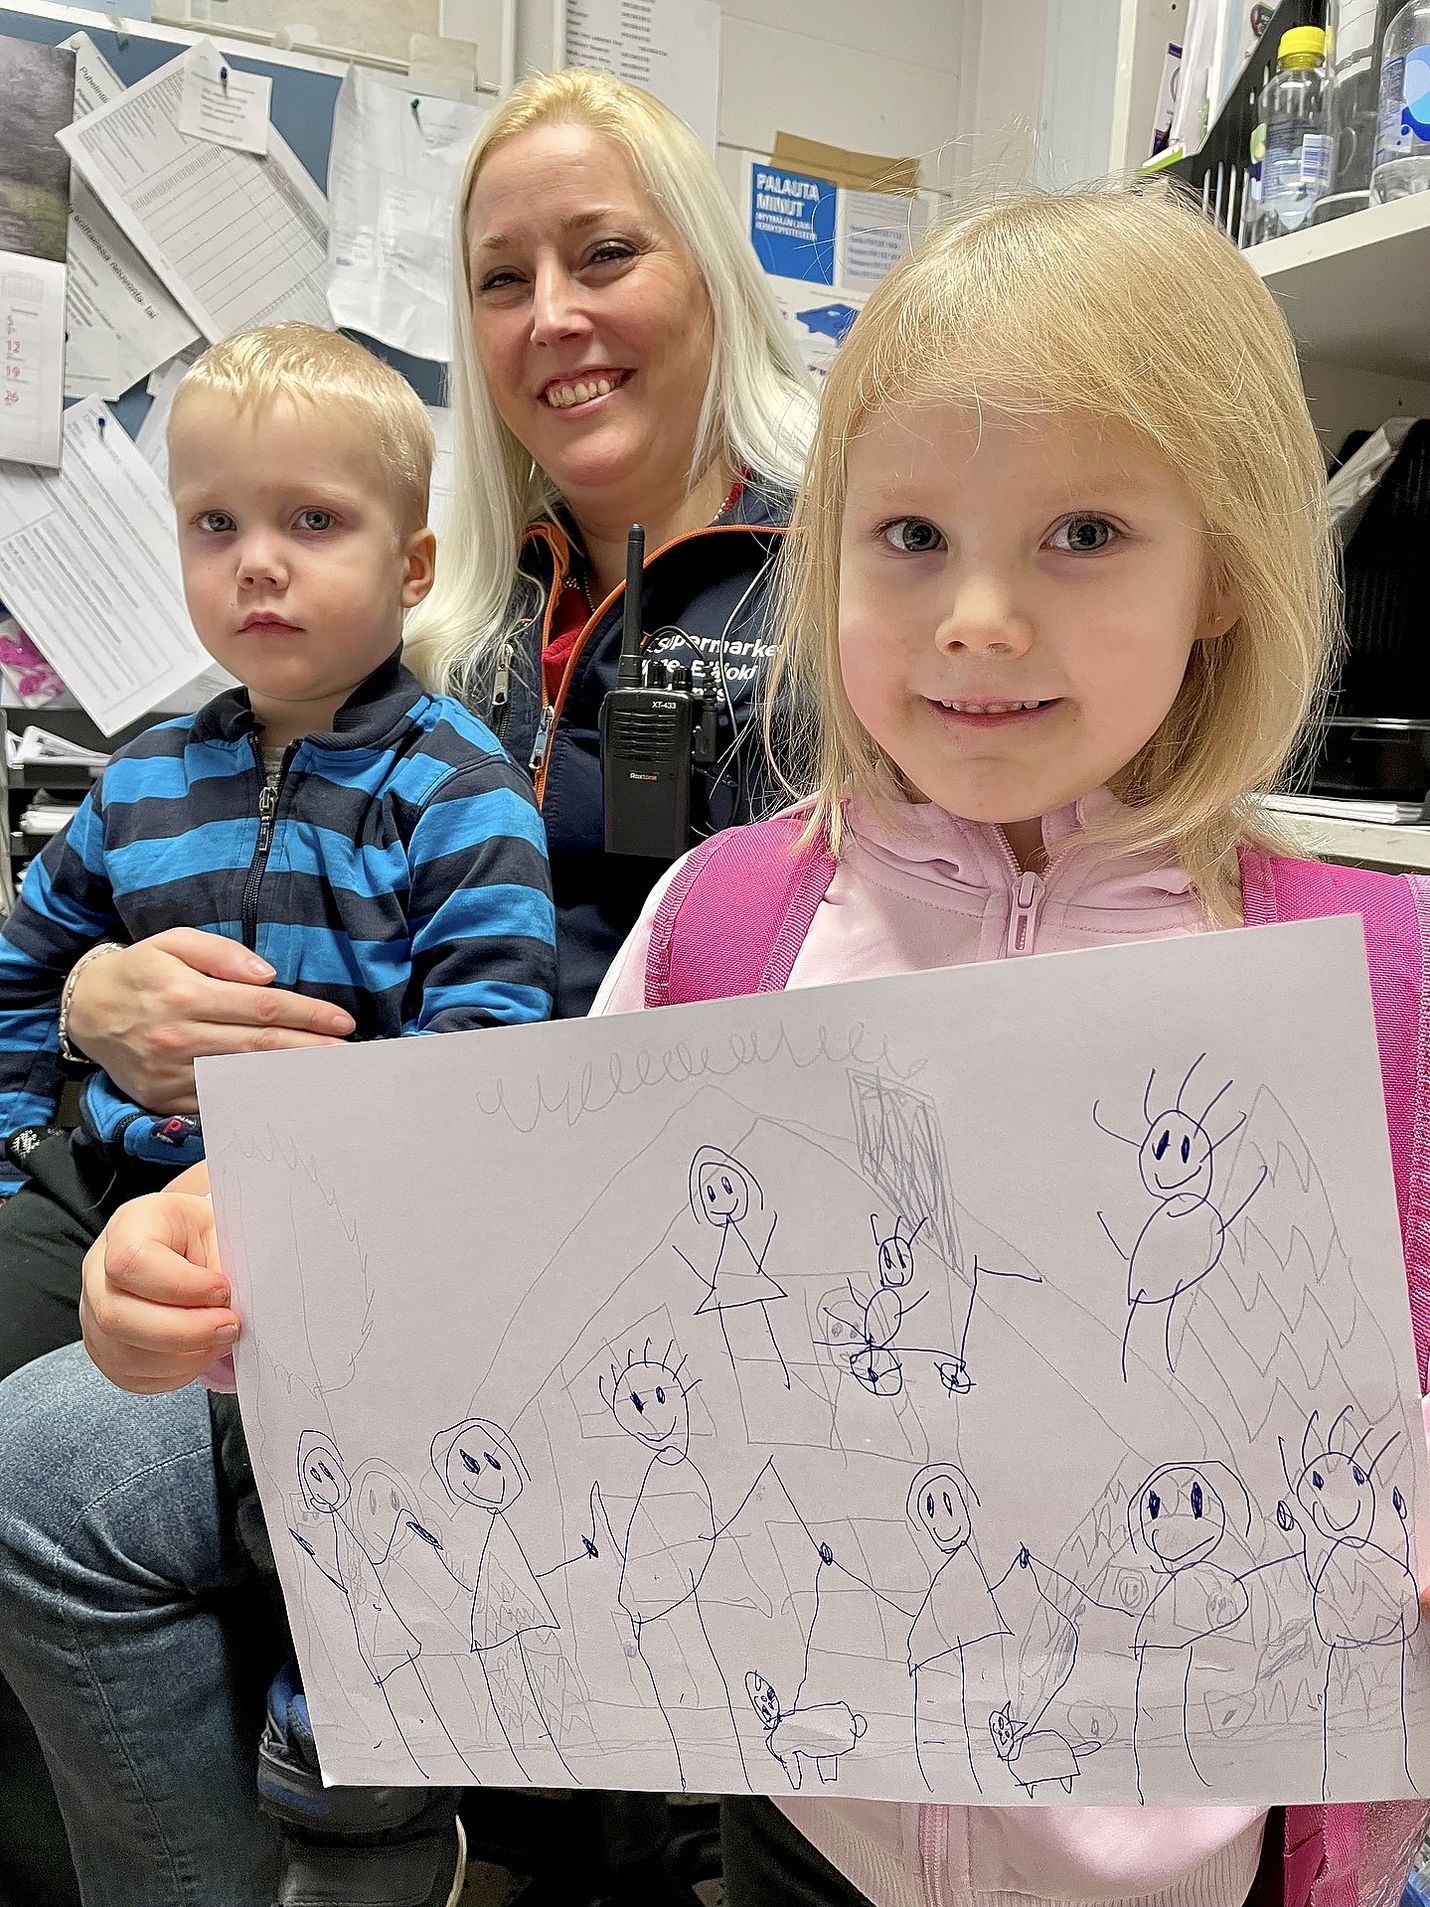 Armas, 2, ja Ilona, 5, ovat tuttu näky K-Supermarket Rosmariinissa, jossa Irene Elläjoki on toiminut kauppiaana jo 10 vuotta. Ilona piirsi äitinsä toimistossa kuvan perheestään, johon kuuluu seitsemän lasta ja kaksi koiraa. 